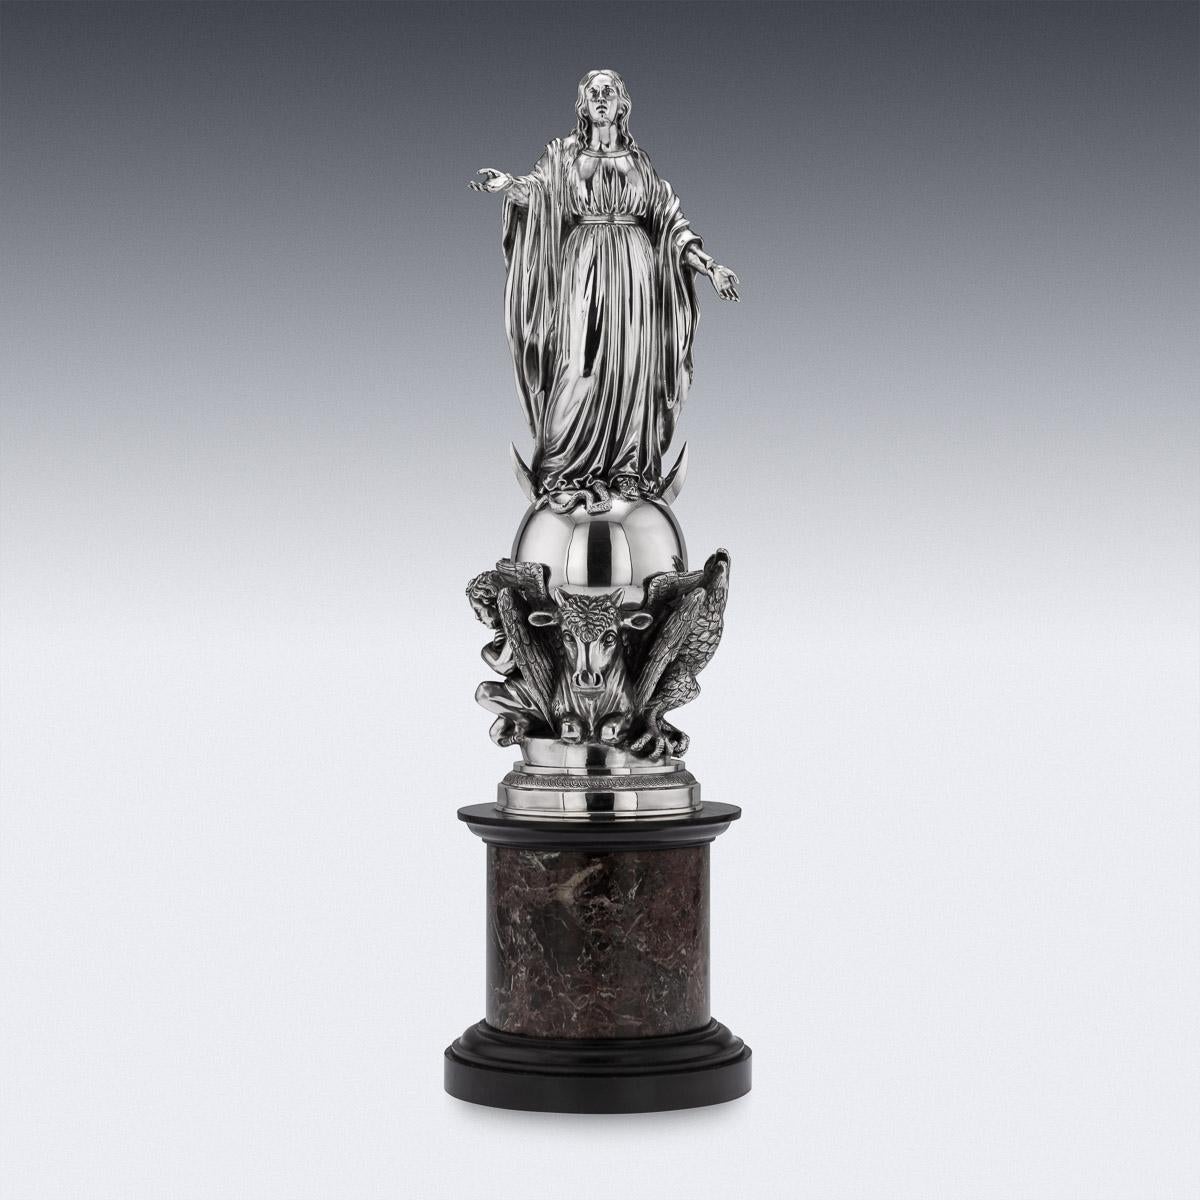 Antike französische Monumentalstatue aus massivem Silber des 19. Jahrhunderts, auf einem Marmorsockel stehend. Die Statue ist realistisch modelliert als gegossene Figur der Maria mit geöffneten Händen, die auf einer Schlange steht, beeinflusst durch